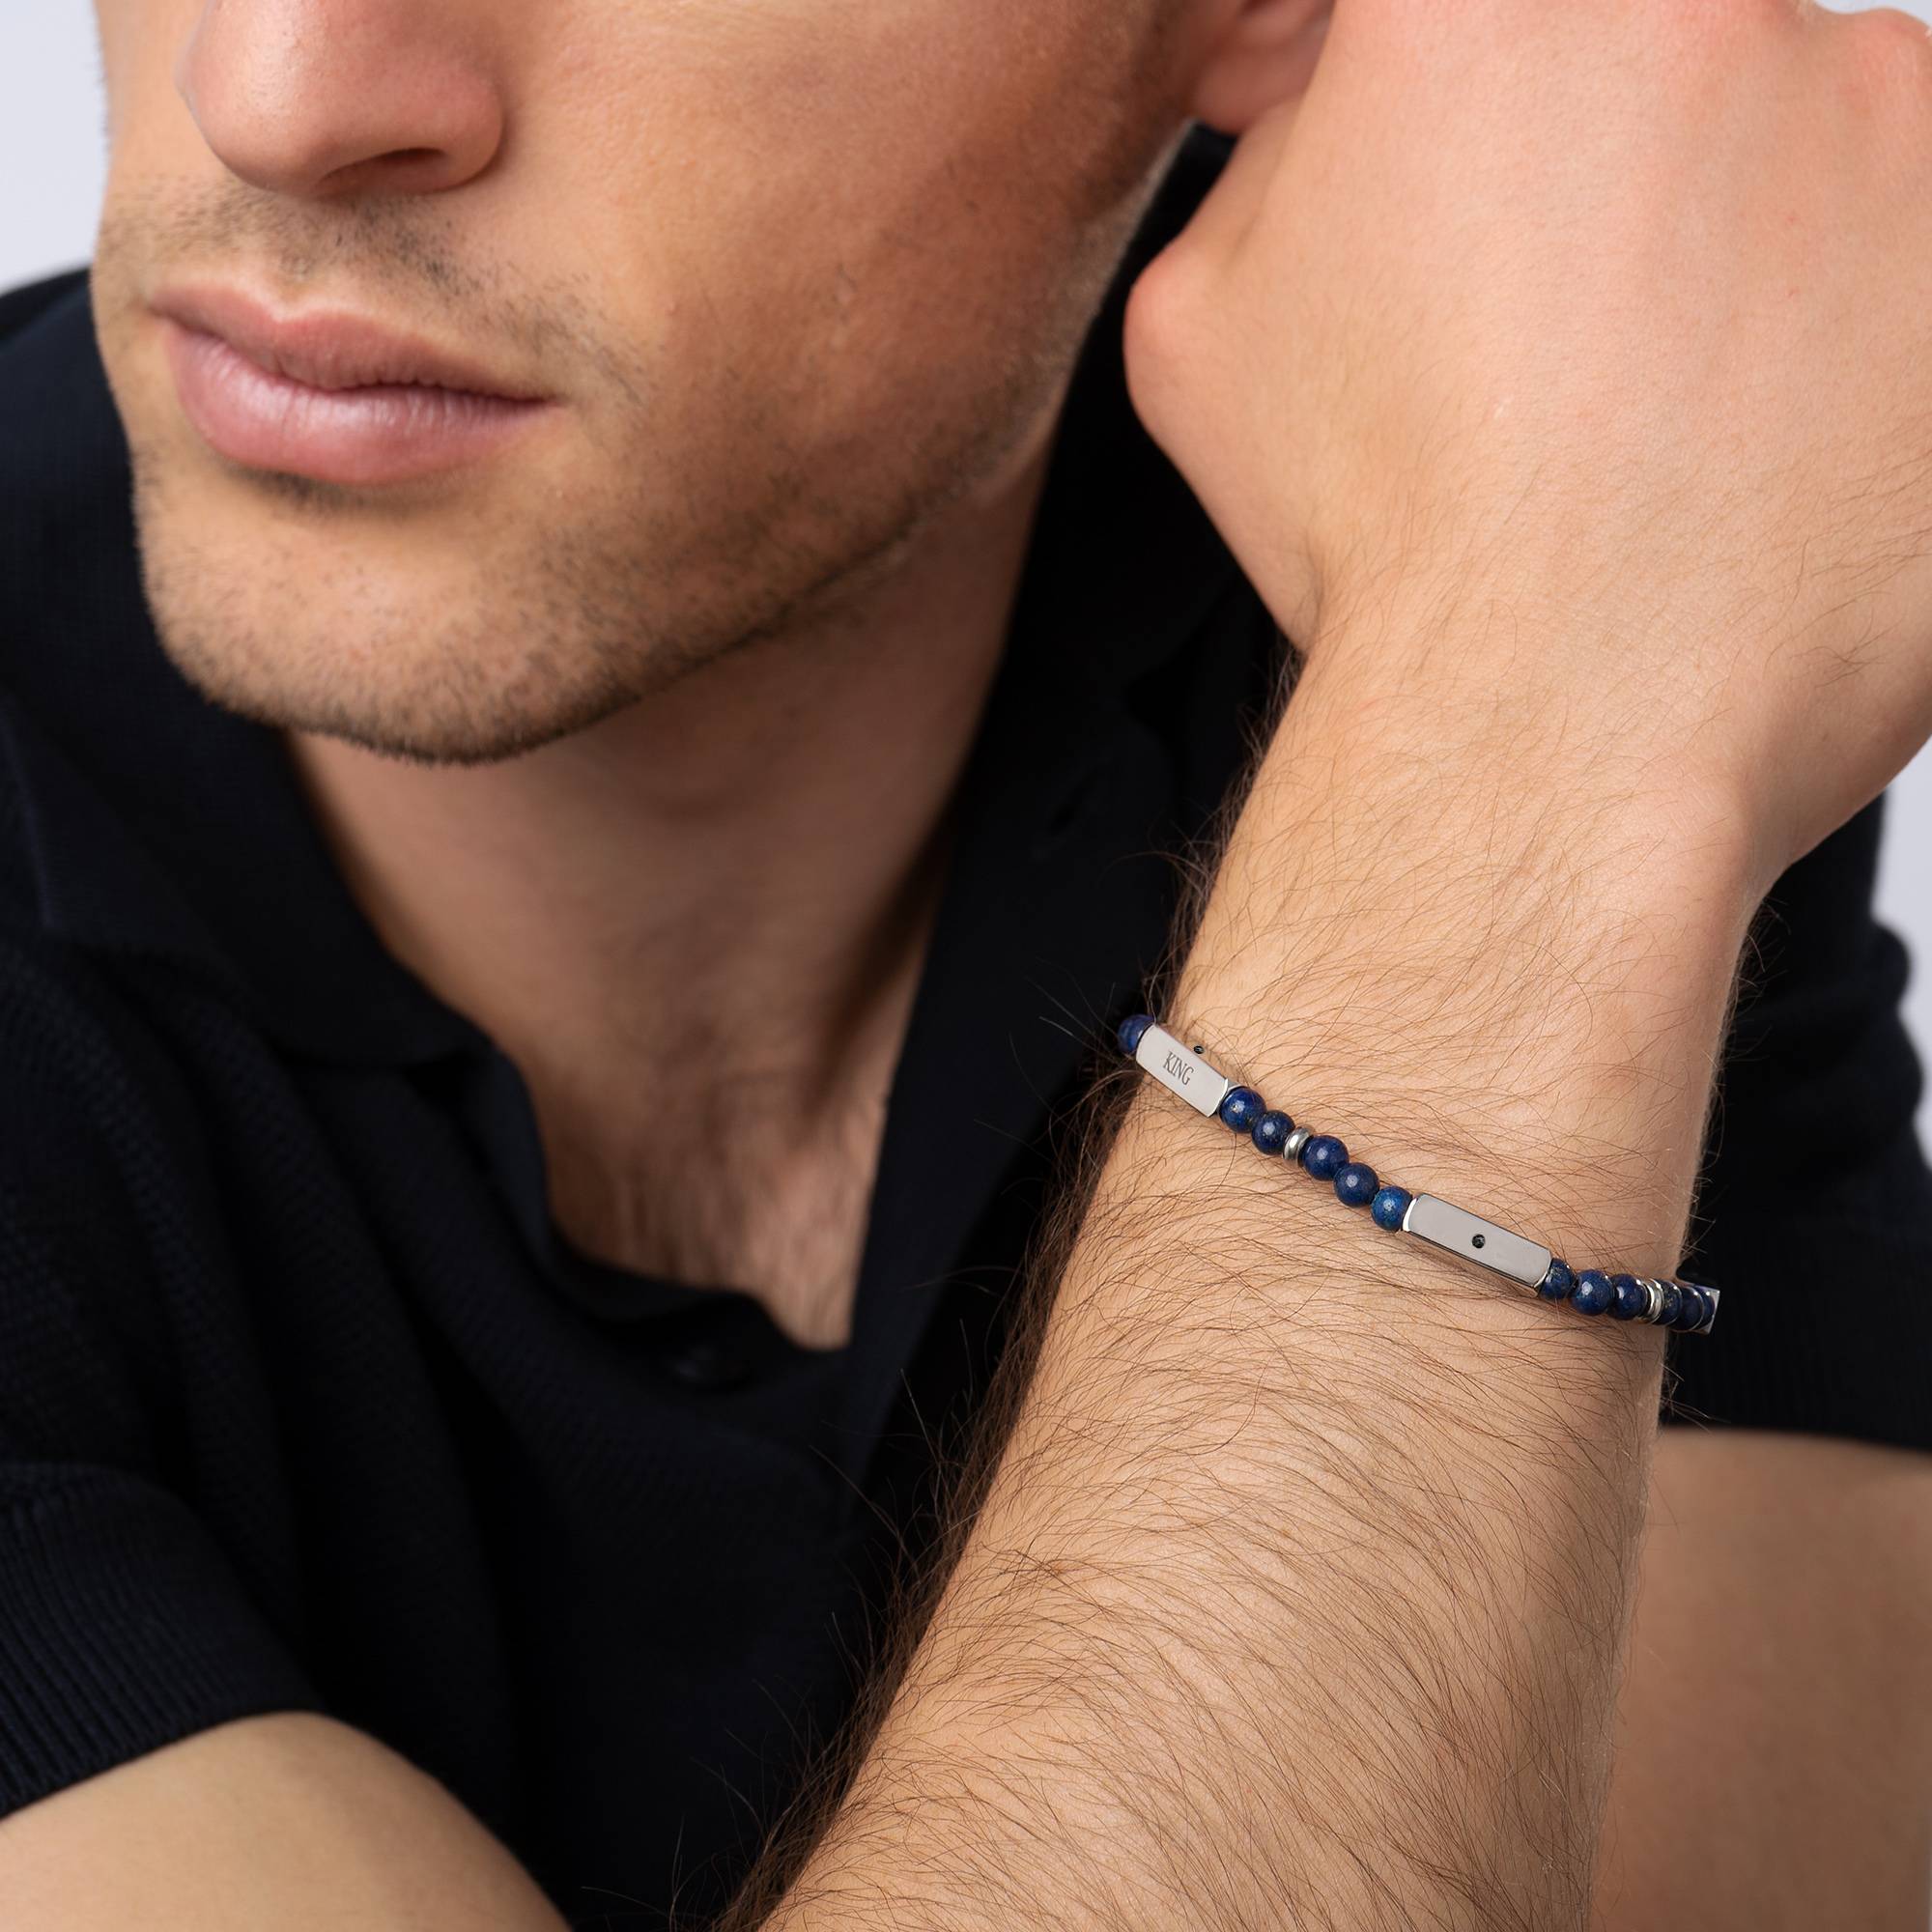 East Coast gepersonaliseerde halfedelstenen kralen armband met zwarte diamanten voor heren-1 Productfoto